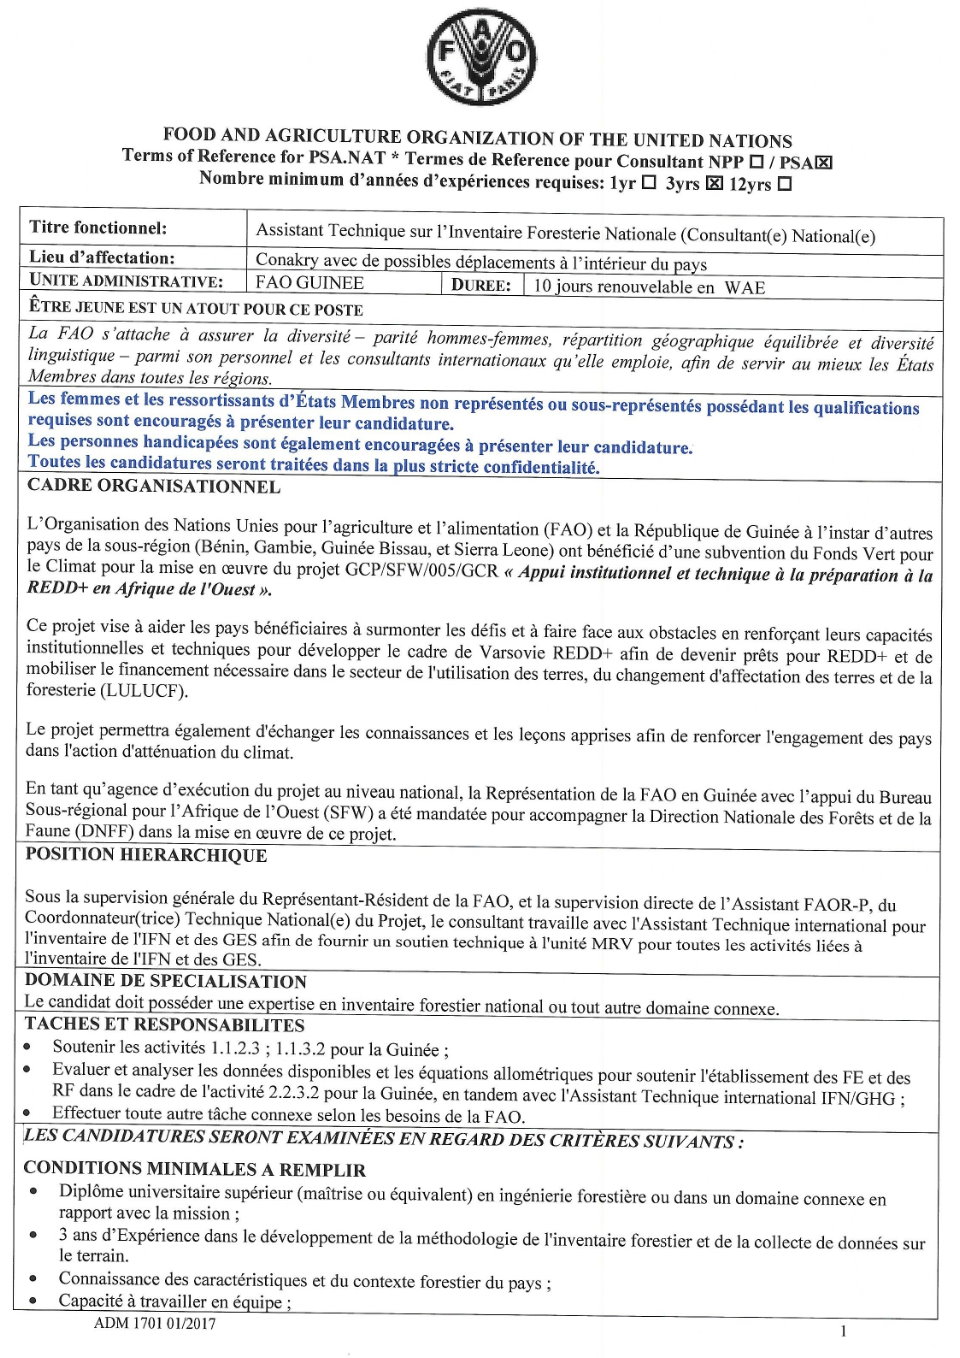 Avis de recrutement d'un Assistant Technique sur l’Inventaire Foresterie Nationale (Consultant(e) National(e) | Page 1